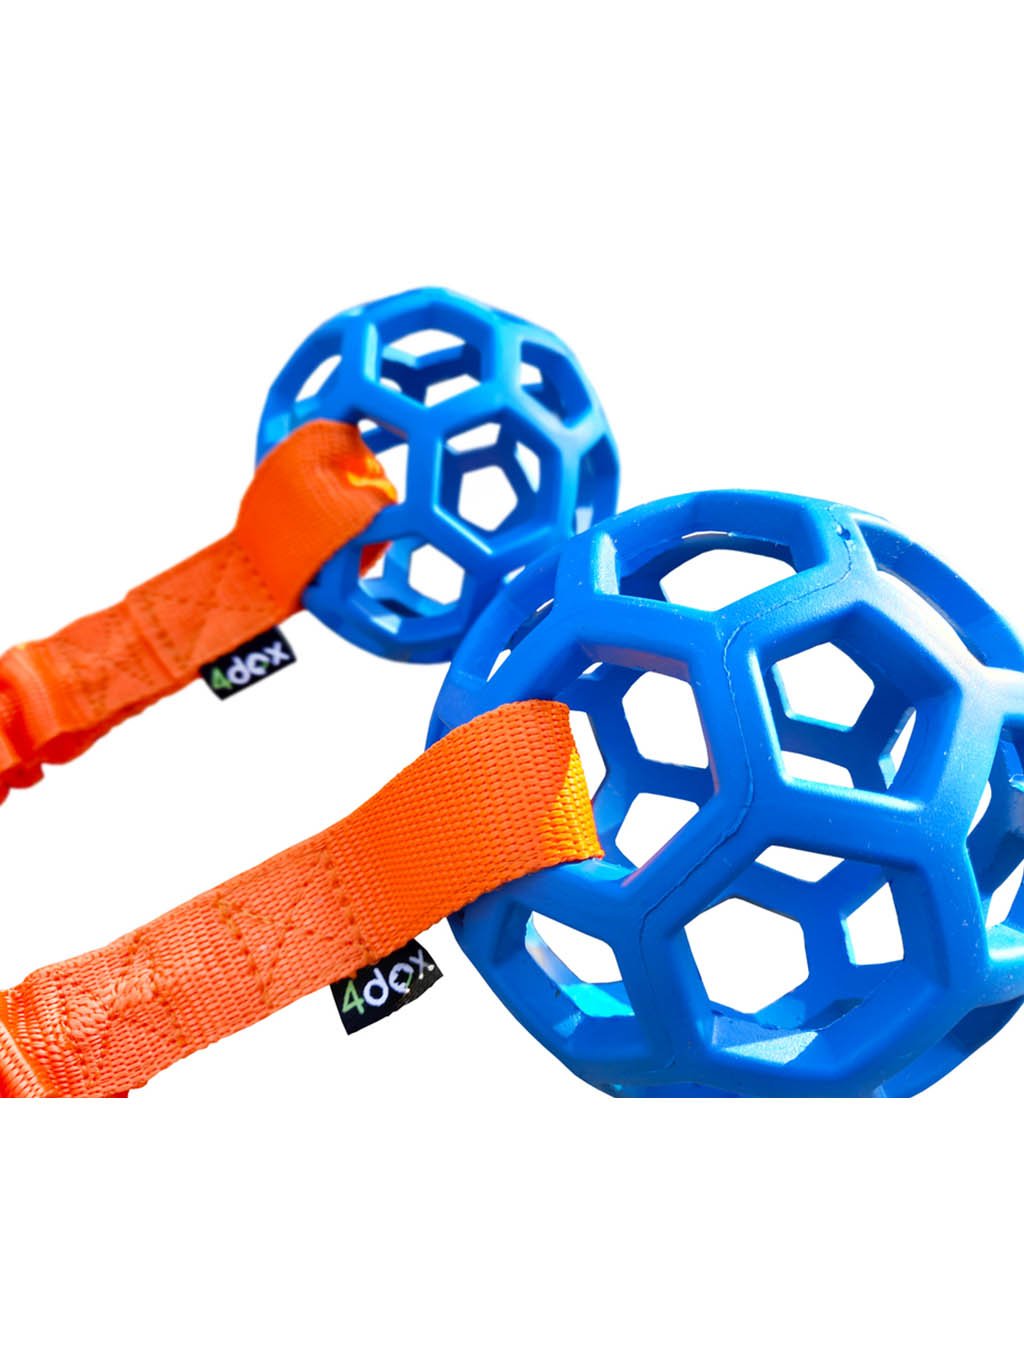 Přetahovadlo - děrovaný míč s amortizérem 8 cm modrá/oranž 4dox